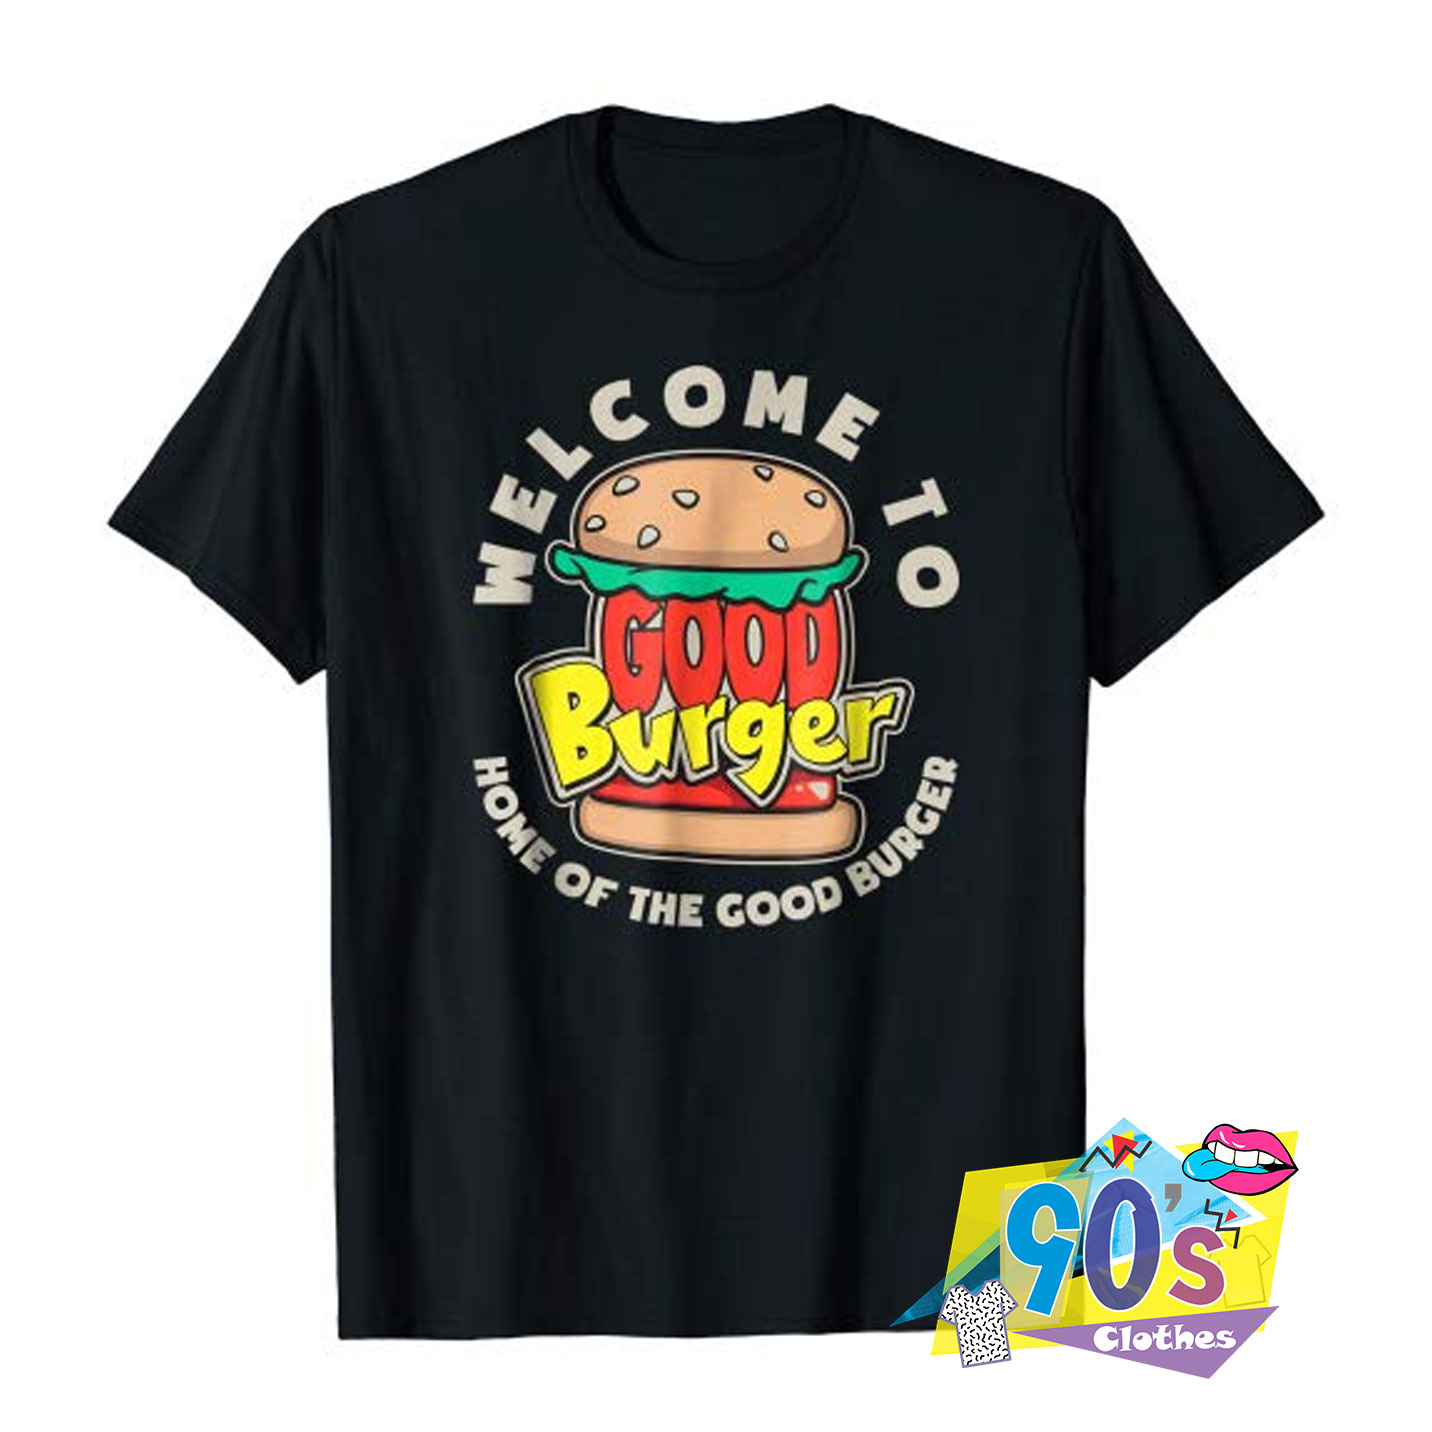 Best Sell Nick Rewind Good Burger T Shirt - 90sclothes.com